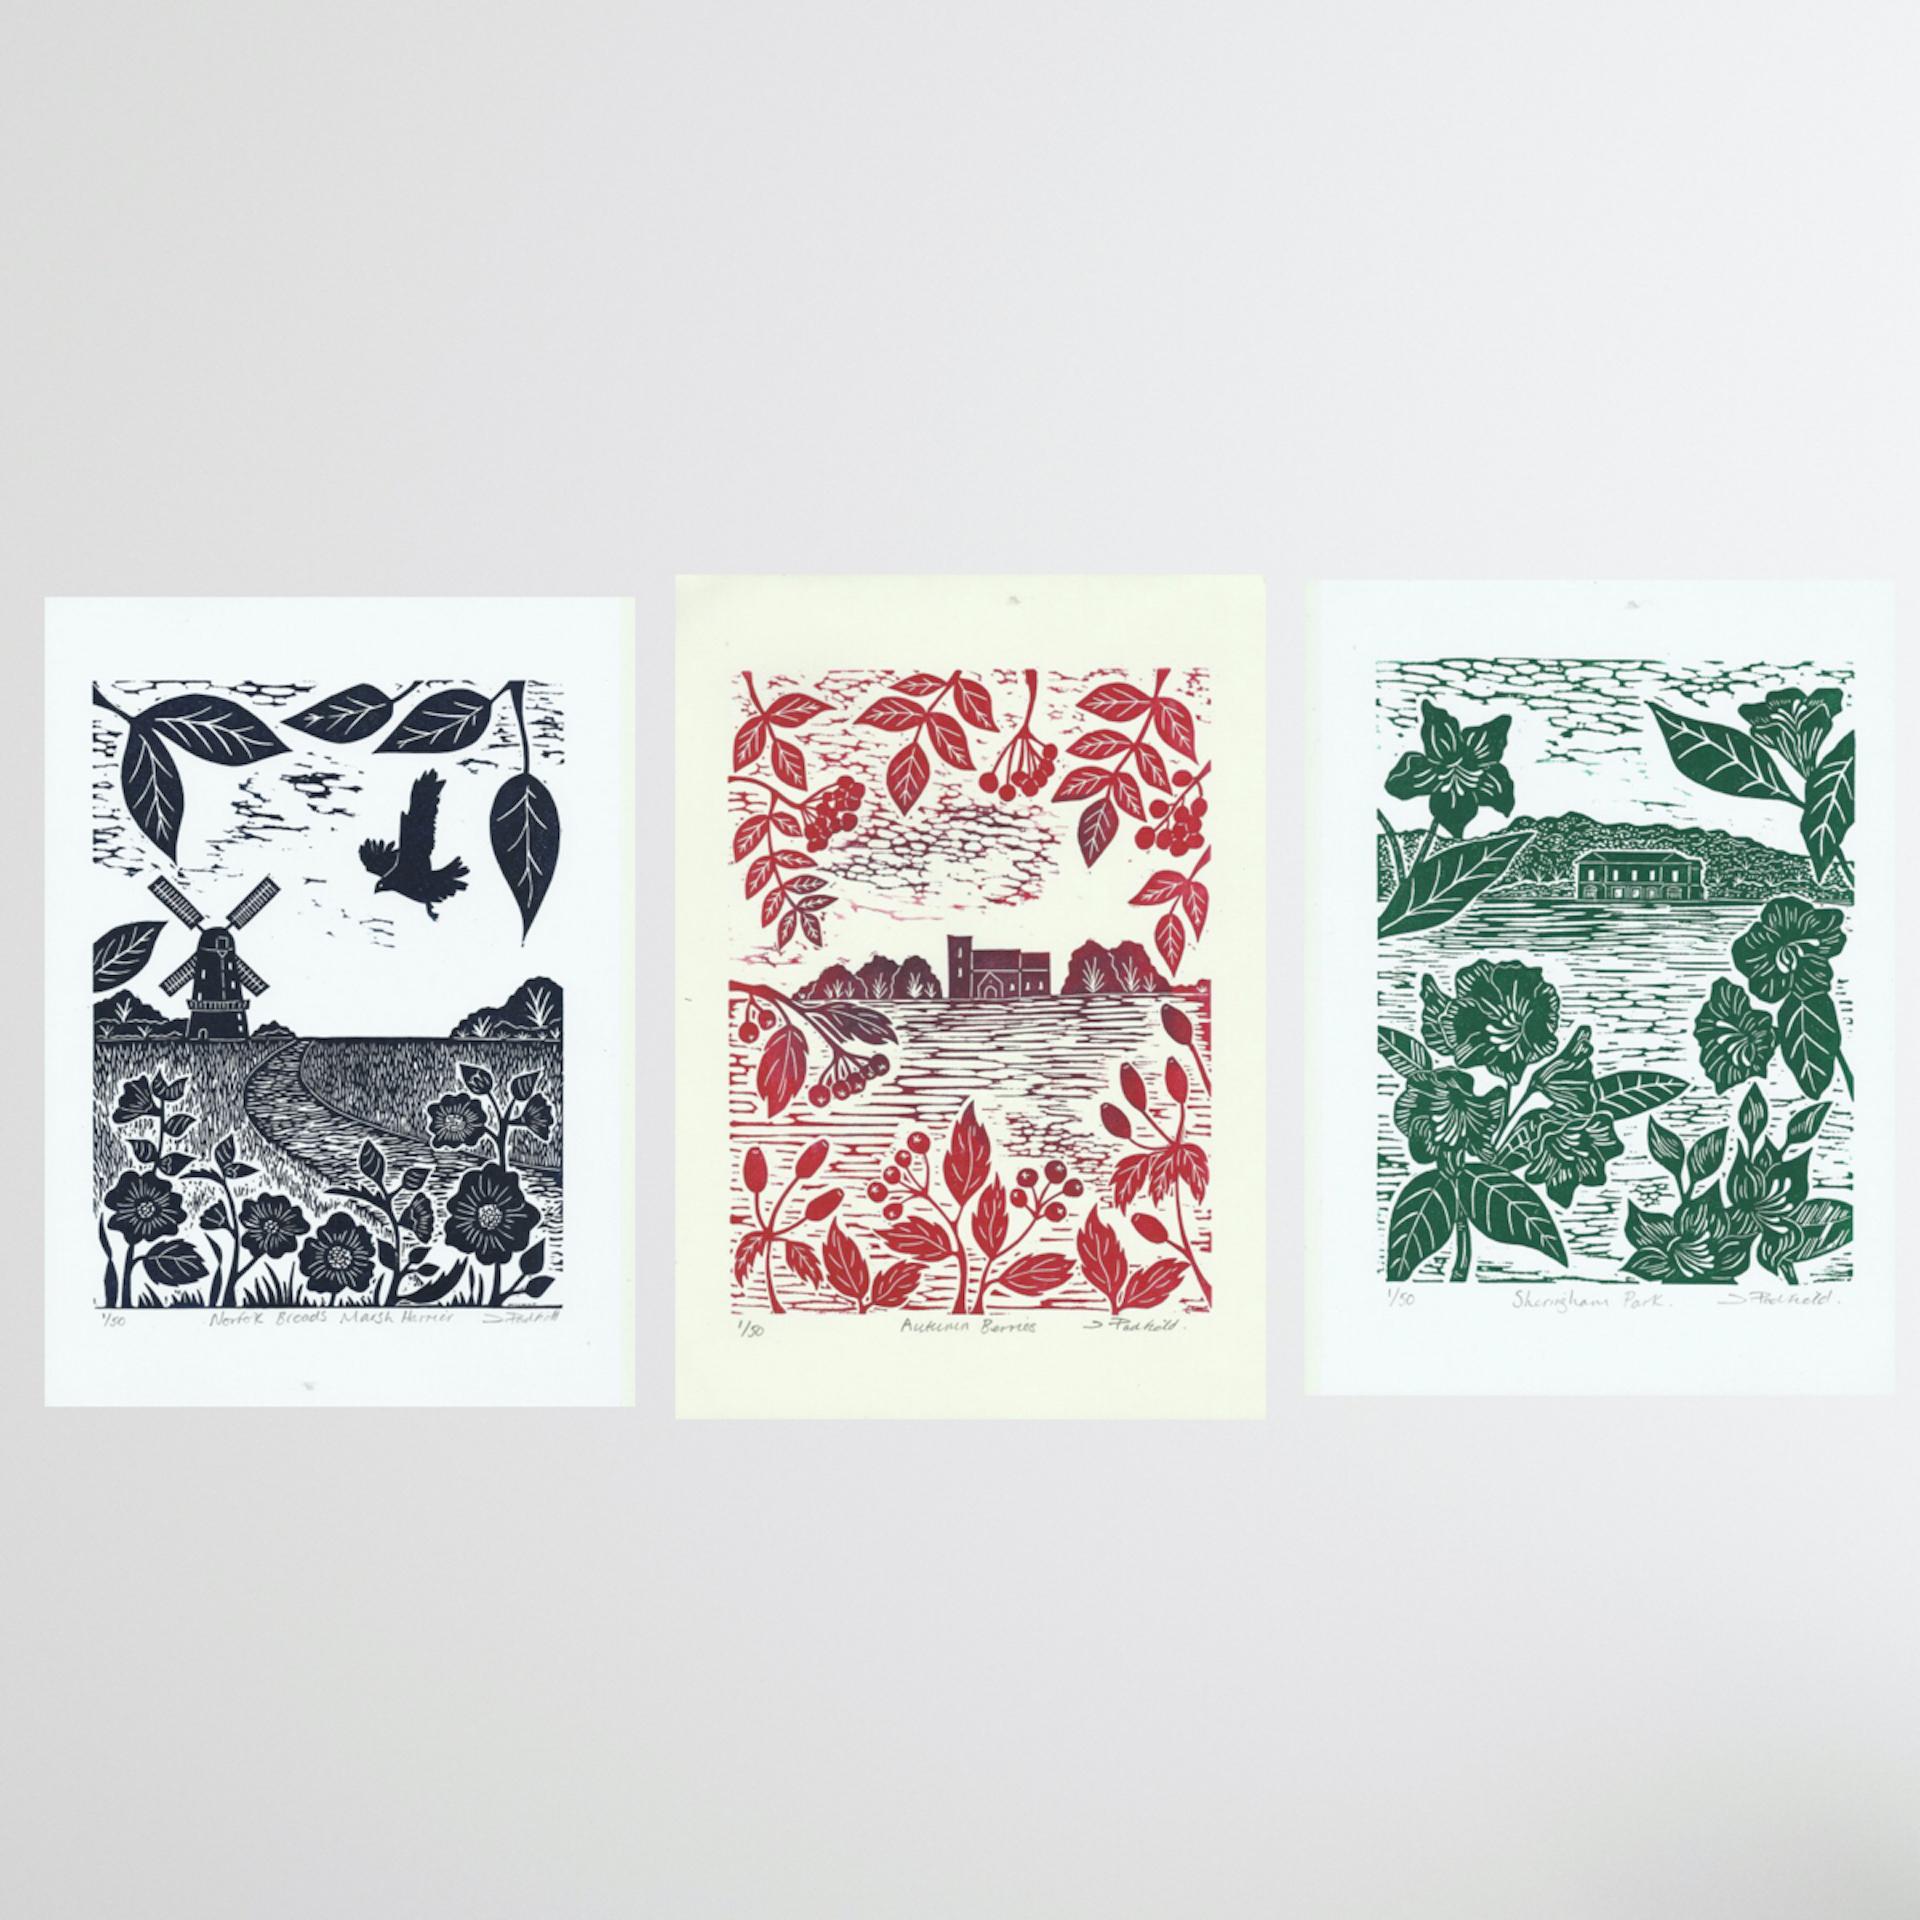 Landschafts-Triptychon von Joanna Padfield

Besteht aus
Norfolk Broads Rohrweihe
Herbstbeeren
Sheringham-Park

Jedes einzelne Stück kostet £65

Ungerahmt verkauft

Jedes Stück ist einzeln H29.7cm x B21cm x T0.1cm

Drei Linoldrucke auf Papier

Jedes